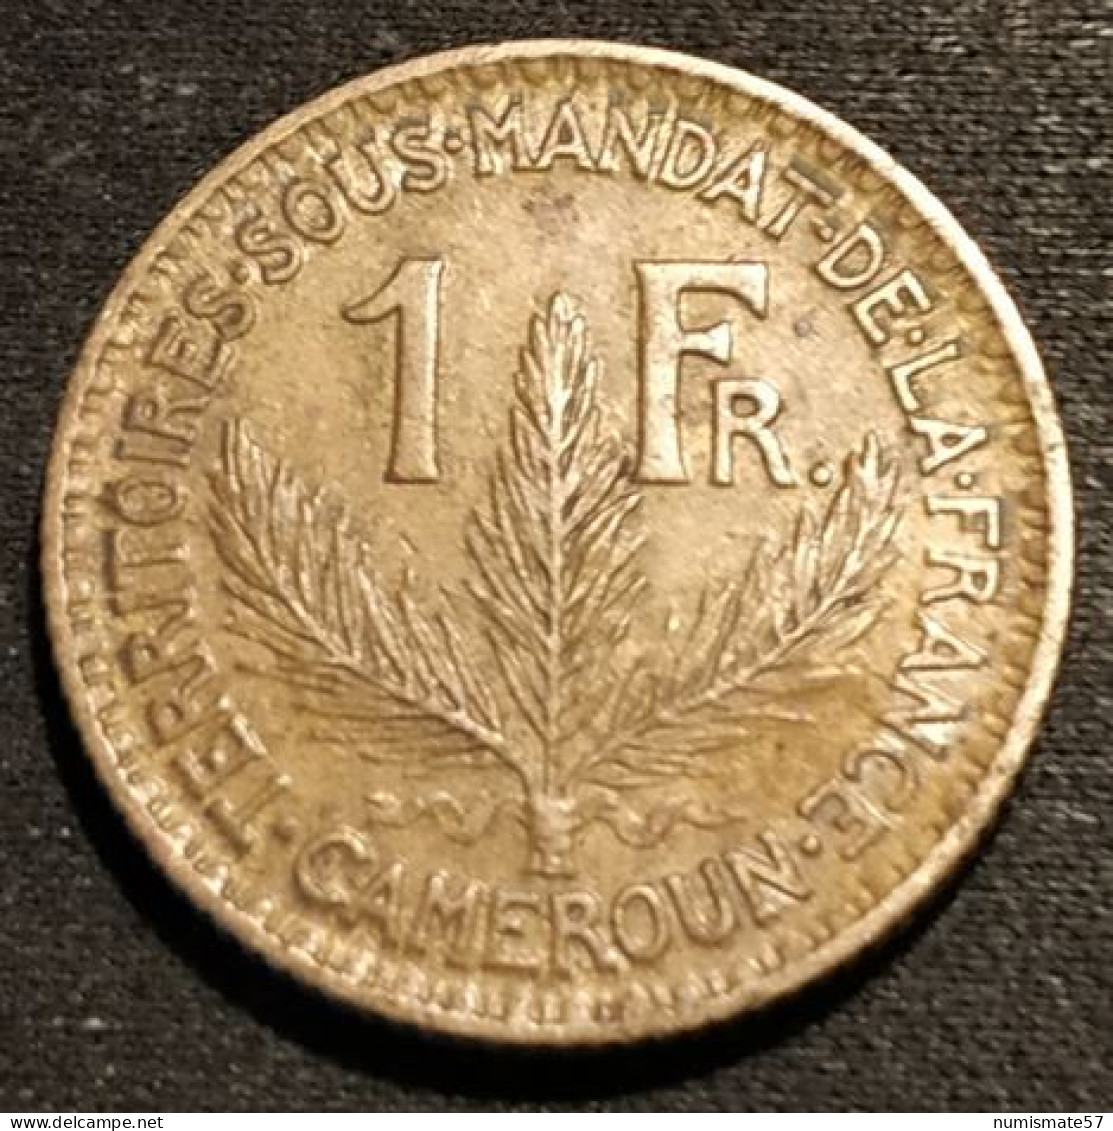 RARE - CAMEROUN - 1 FRANC 1926 - KM 2 - TERRITOIRES SOUS MANDAT DE LA FRANCE - Kameroen